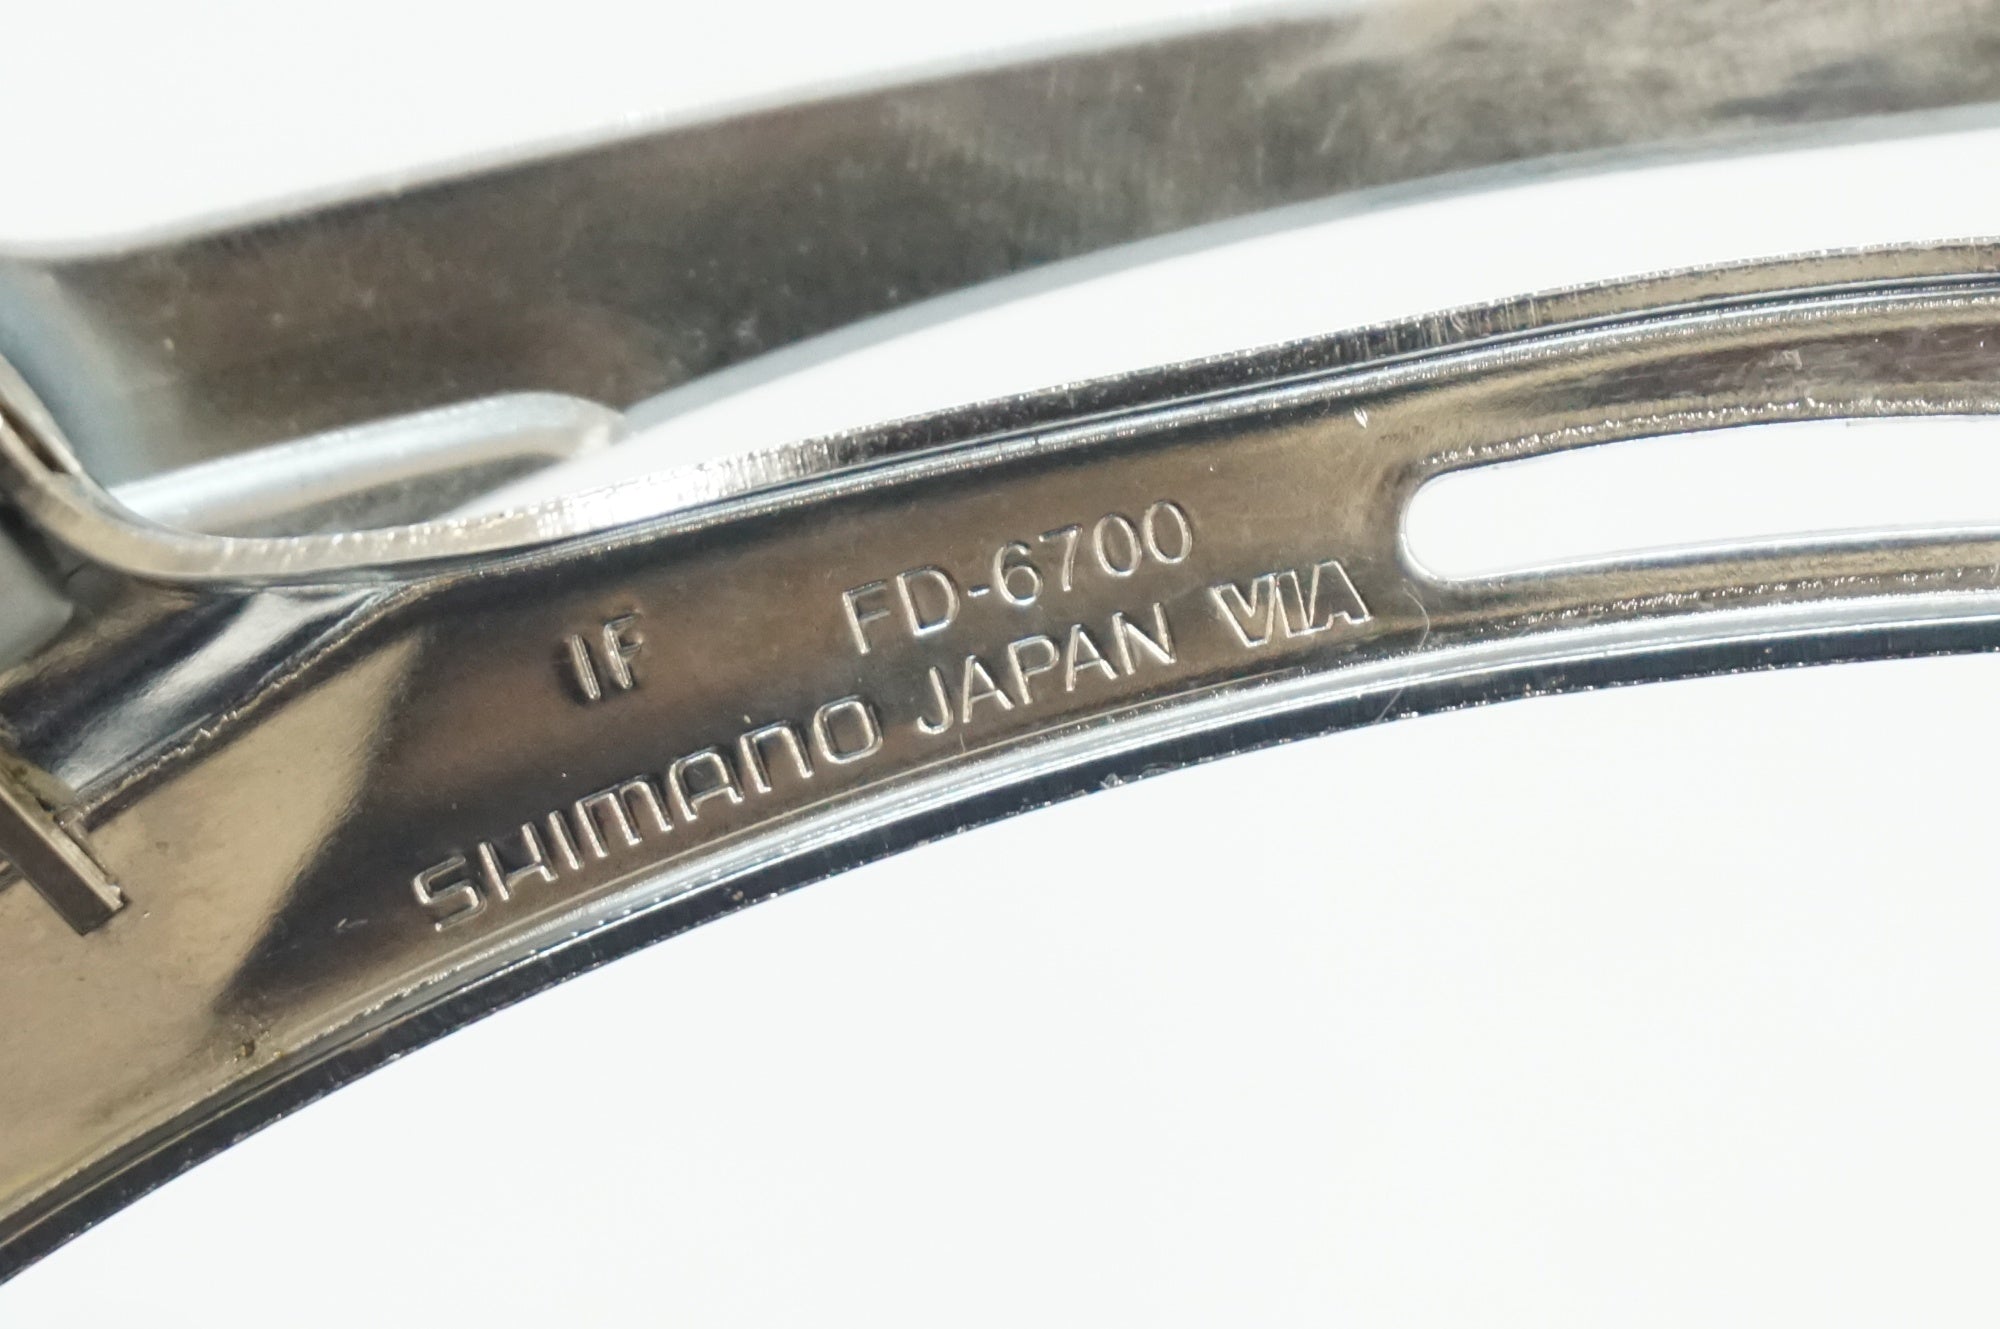 SHIMANO 「シマノ」 ULTEGRA FD-6700 フロントディレイラー / 福岡アイランドシティ店